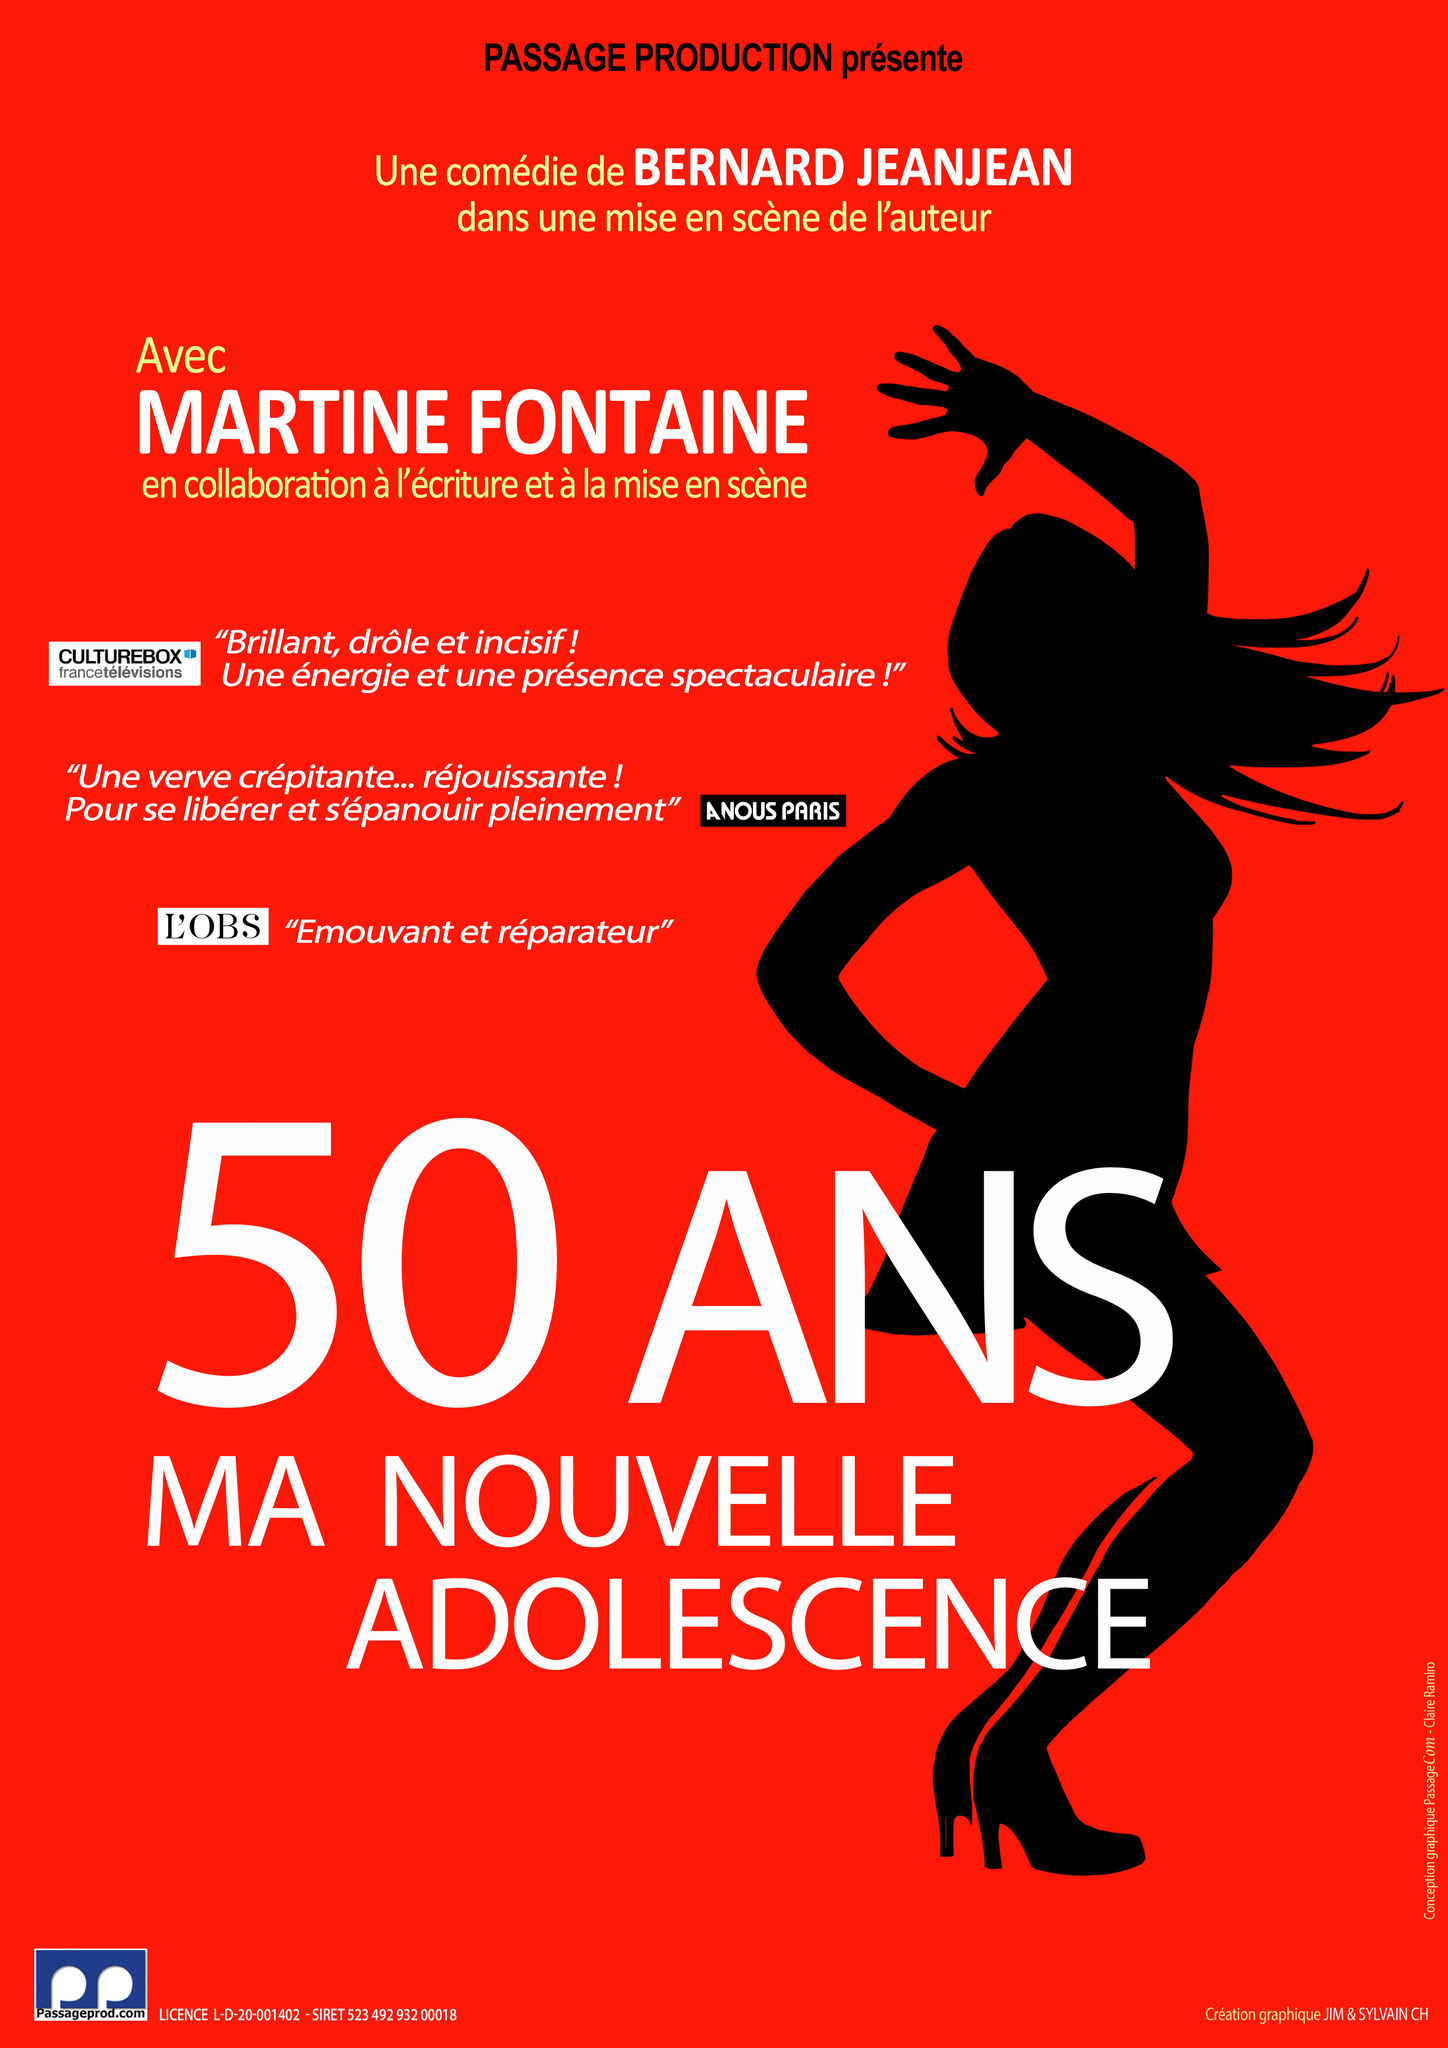 DU 30 SEPTEMBRE AU 2 OCTOBRE 2021 AU THÉÂTRE LA FONTAINE D'ARGENT (Aix-en-Provence)